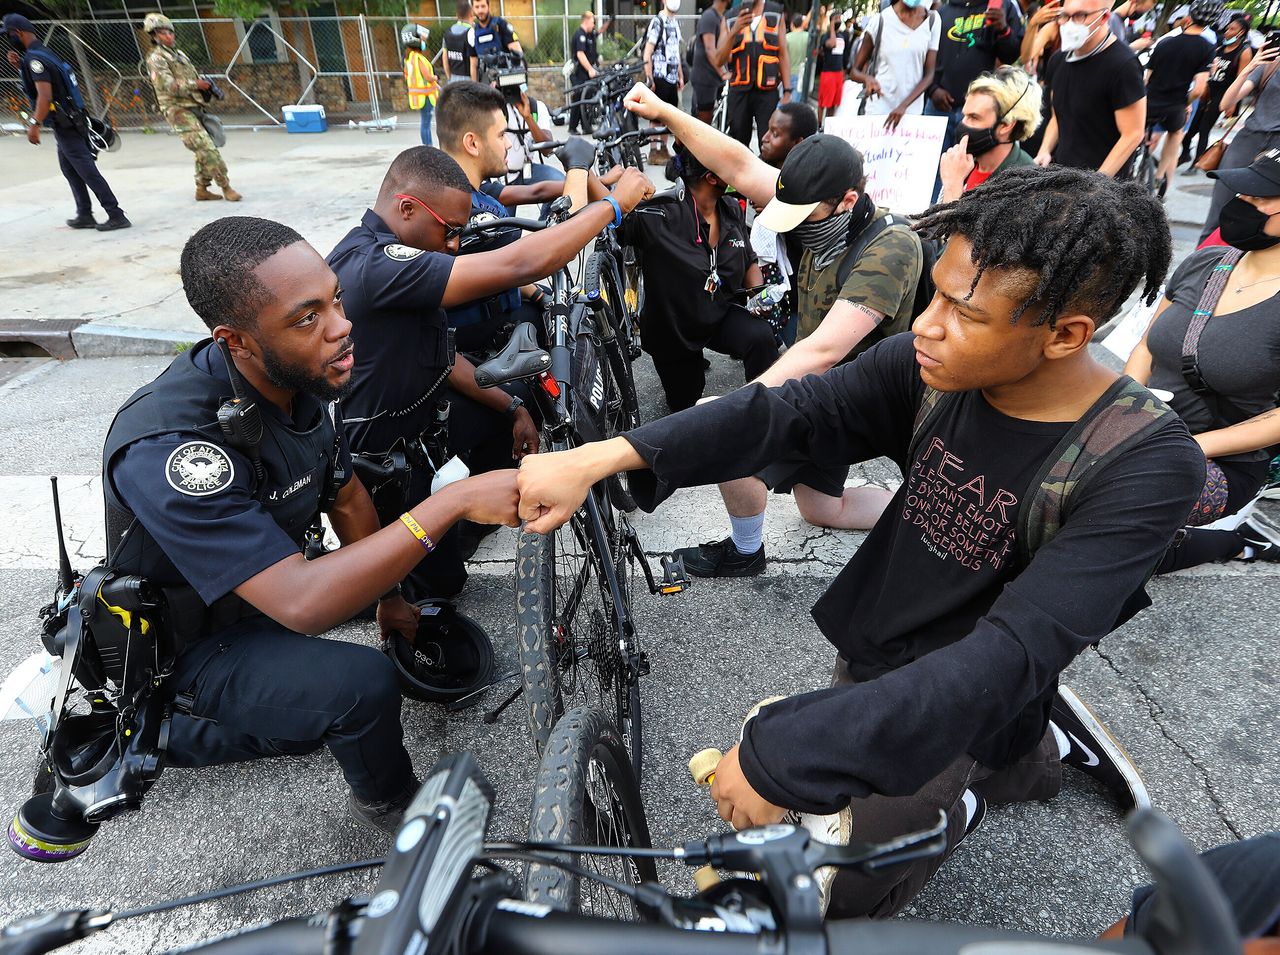 Ο αστυνομικός Τζέι Κόλμαν, γονατίζει και ακουμπάει την φροθιά του με τον διαδηλωτή Ελάιτζα Ράφινγκτον, σε μια συμβολική χειρονομία αλληλεγγύης έξω από το Κέντρο CNN στην Ατλάντα, την Τετάρτη, 3 Ιουνίου.